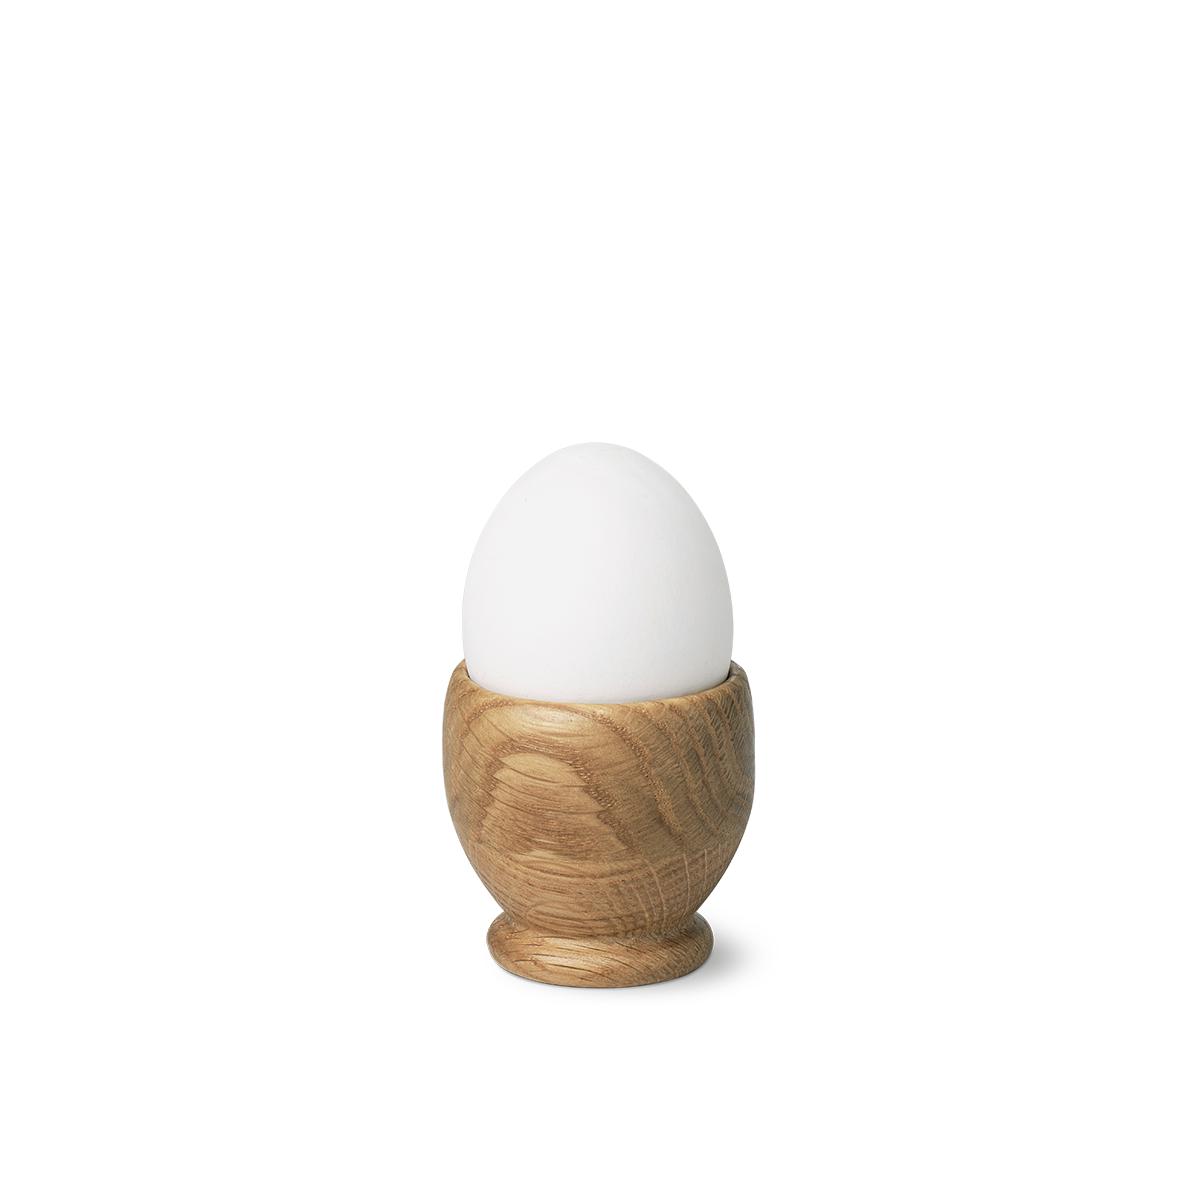 Kay Bojesen Egg Cup ø5,5 Cm, 2 Pcs.